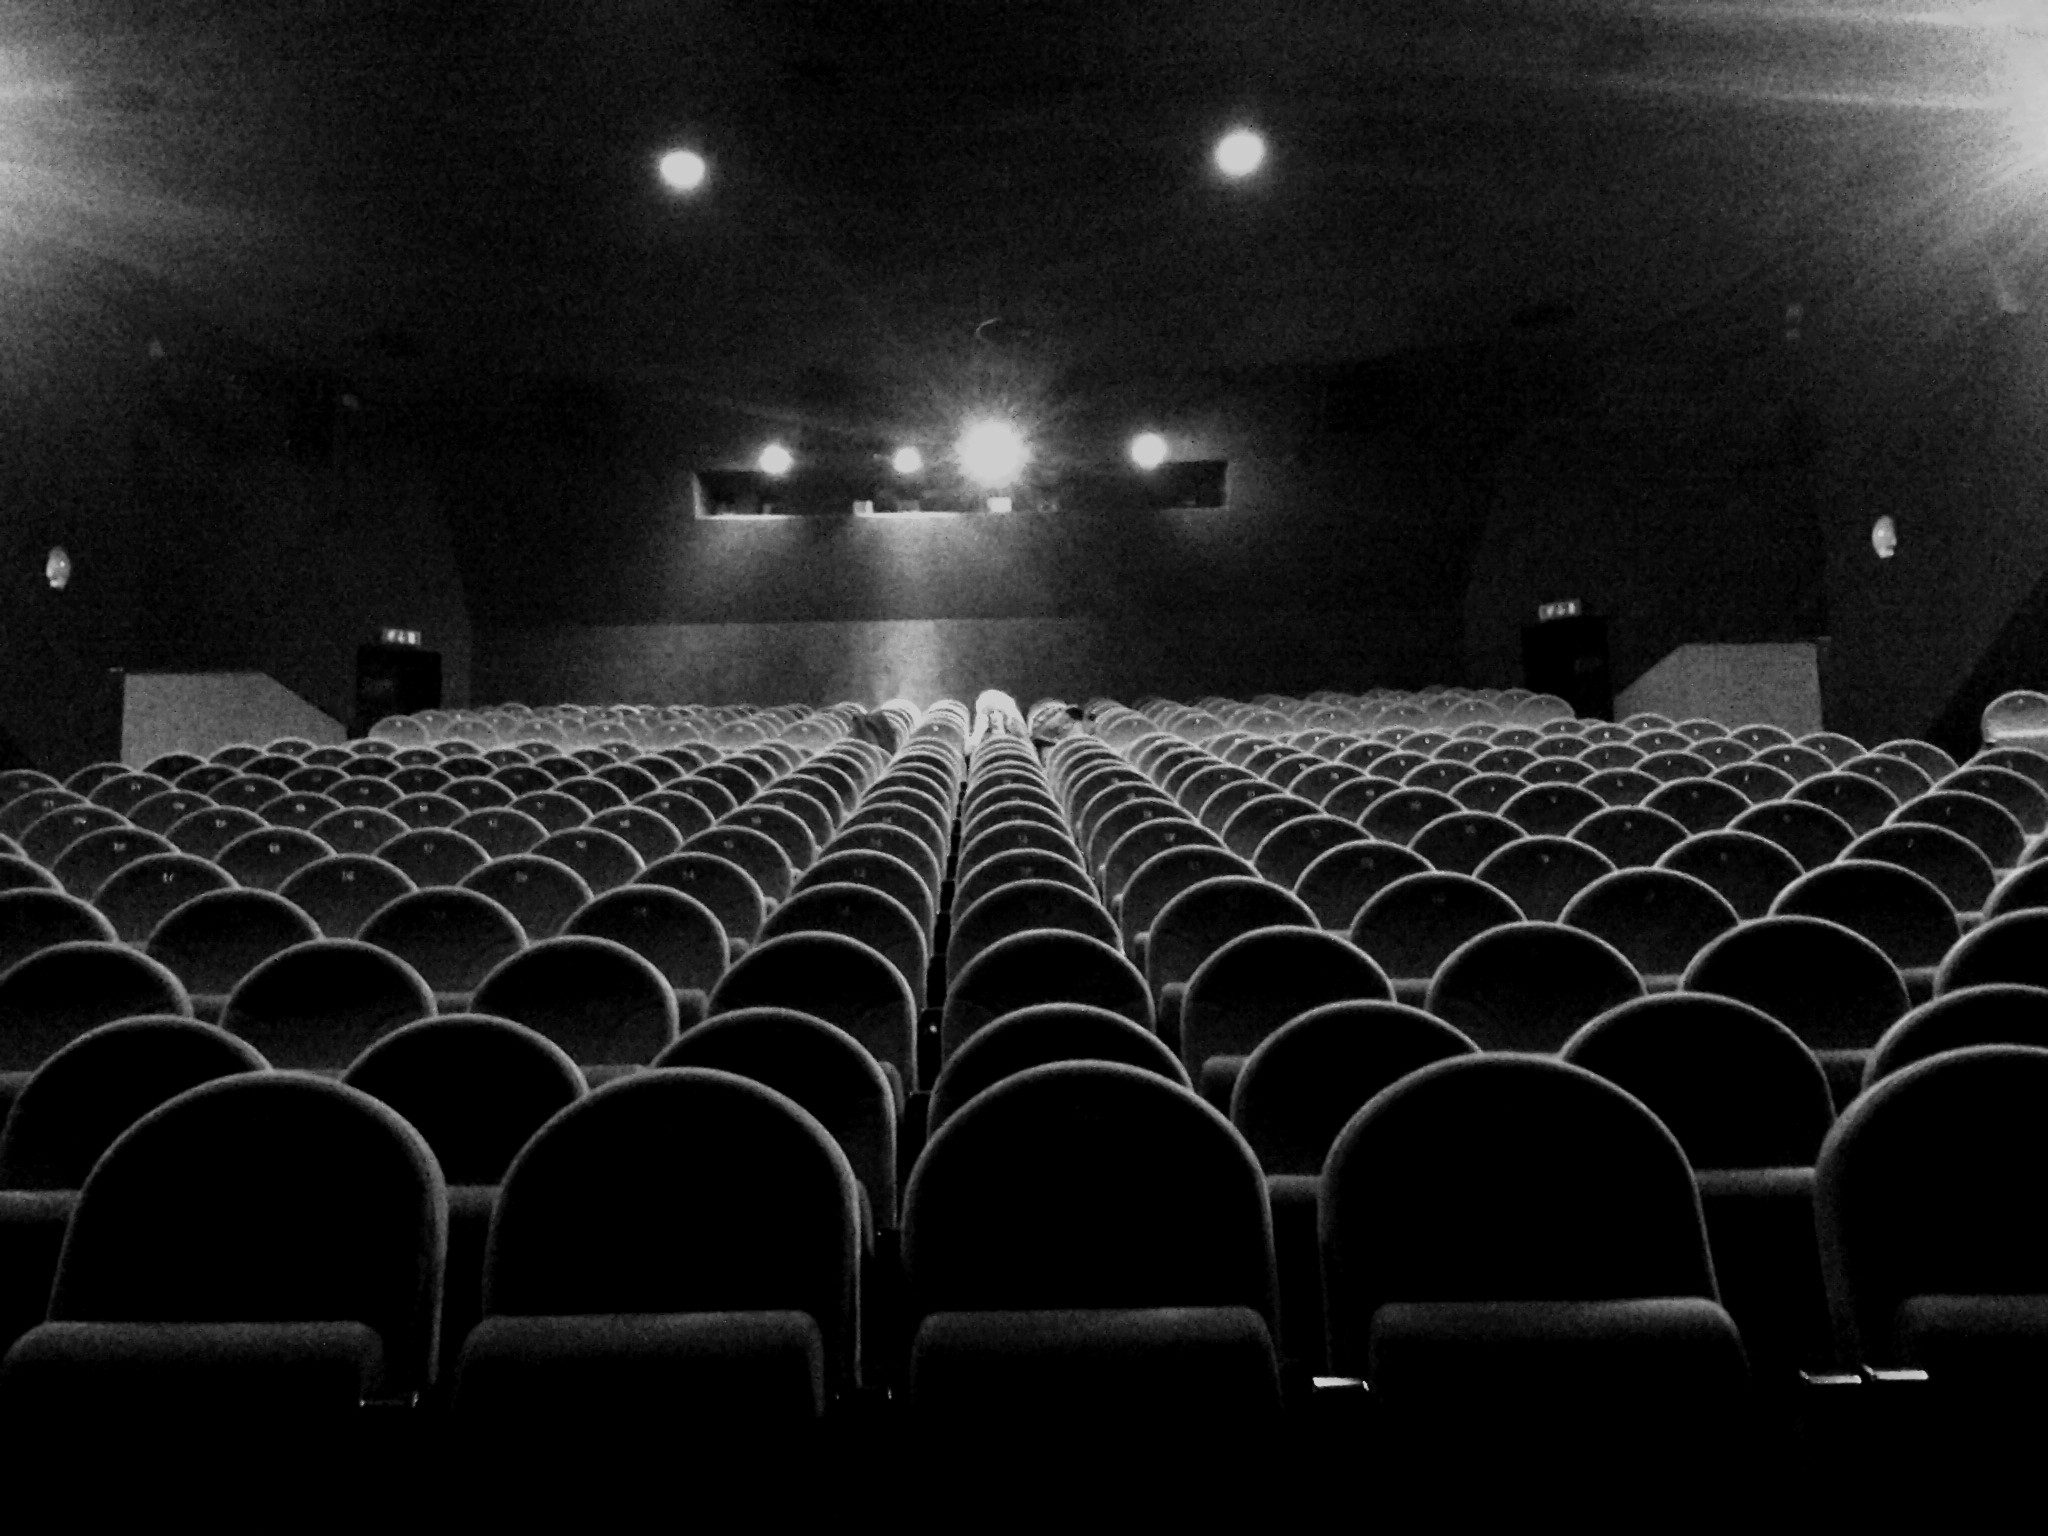 2048x1536 empty cinema room by MalyPluskwiak on DeviantArt